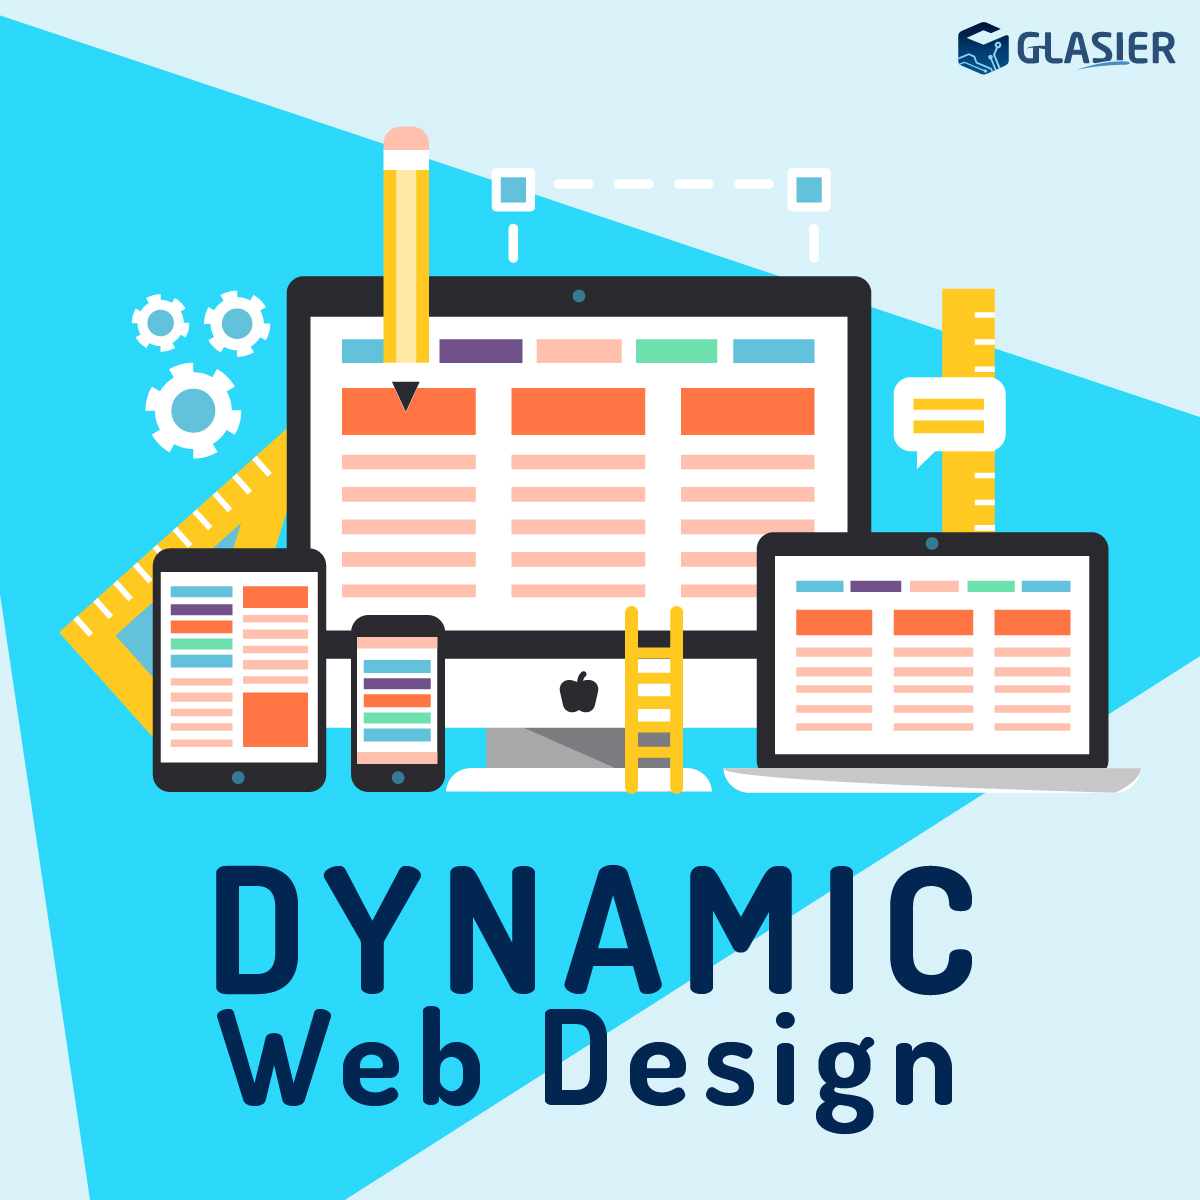 Dynamic Website Design